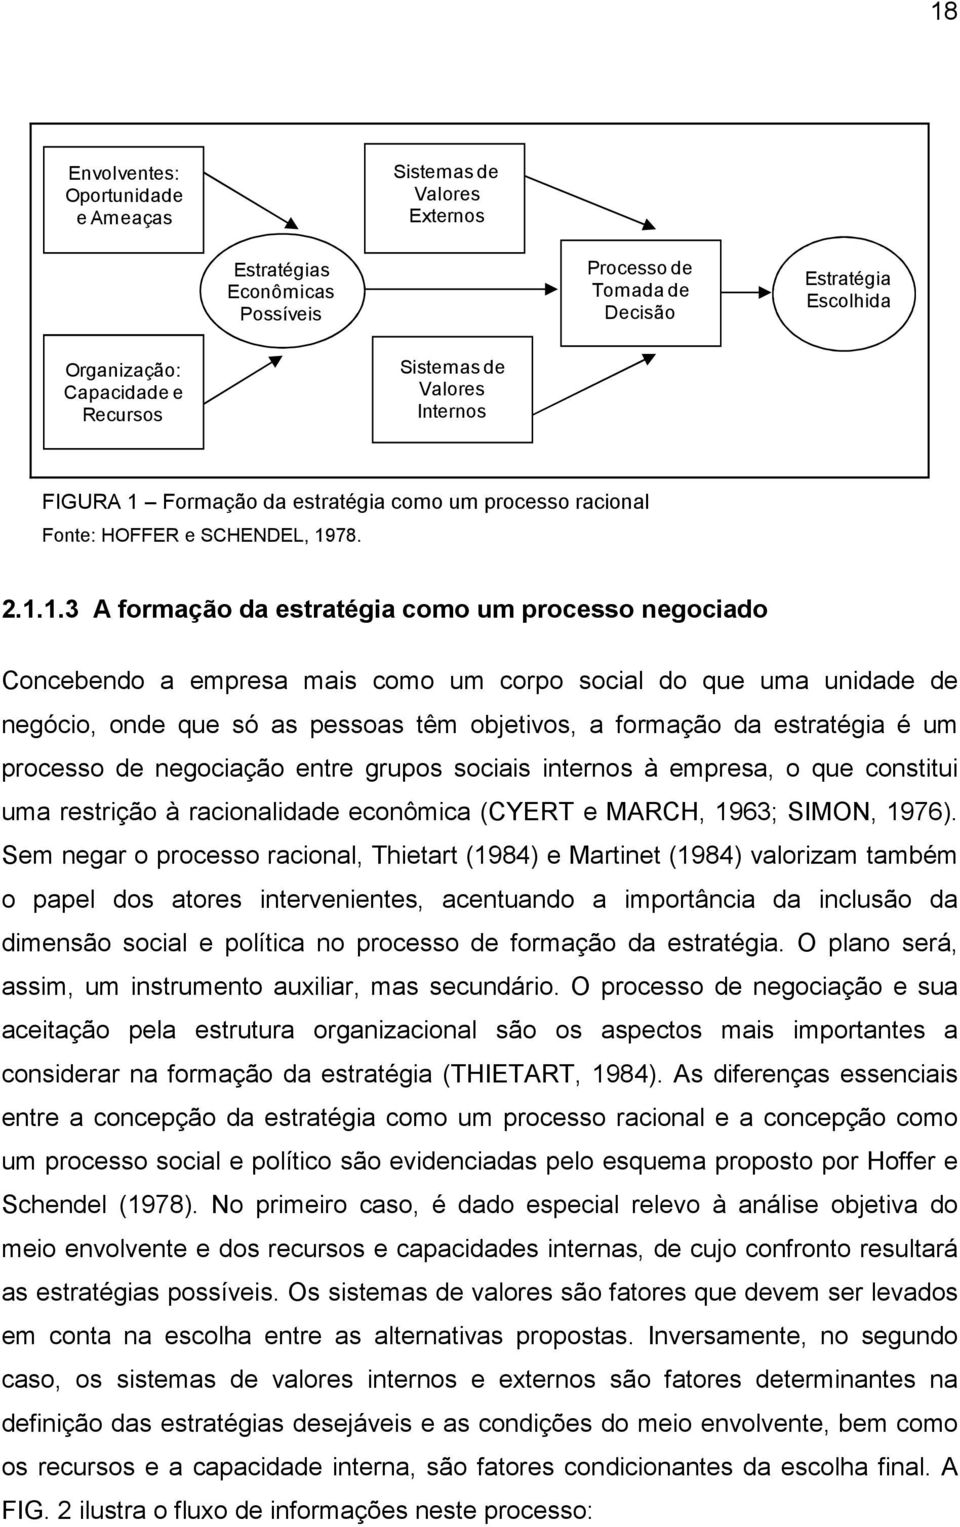 Formação da estratégia como um processo racional Fonte: HOFFER e SCHENDEL, 19